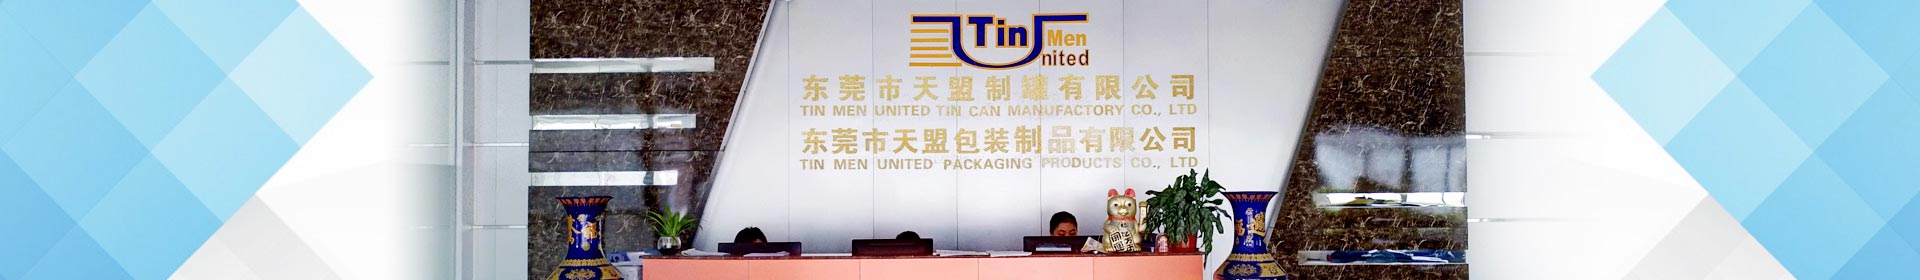 China tin box supplier